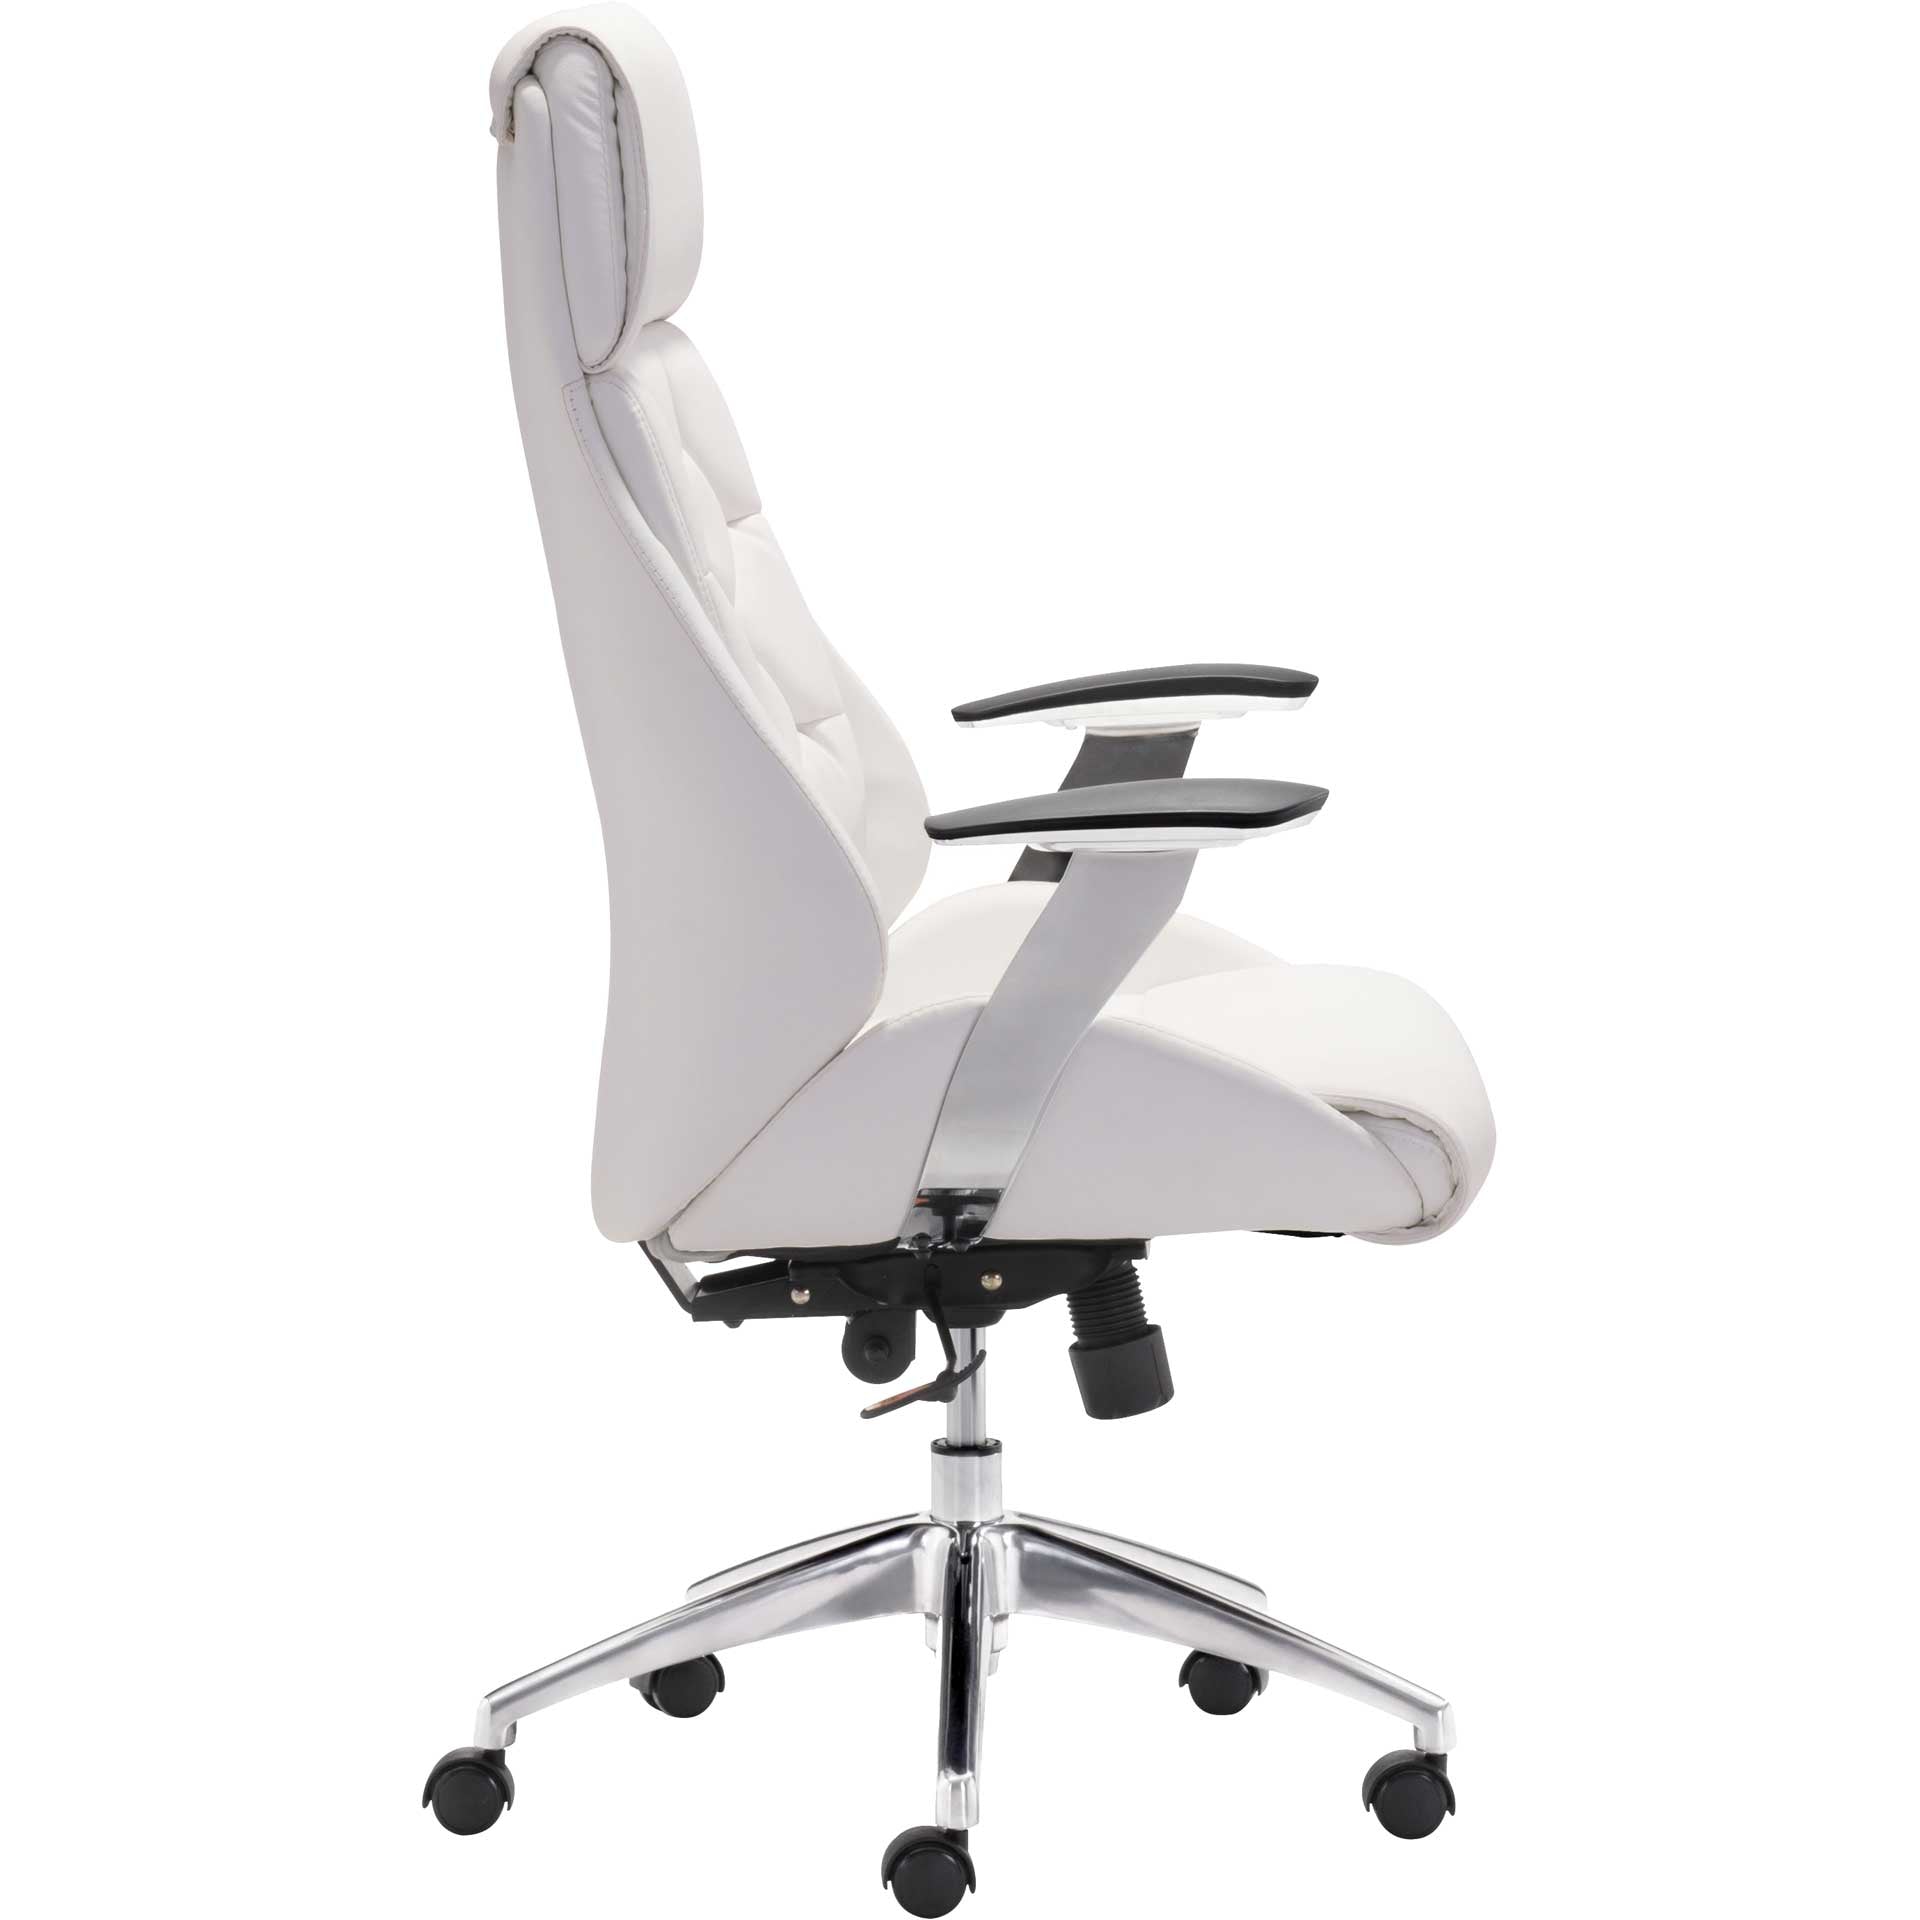 Bronx Office Chair White